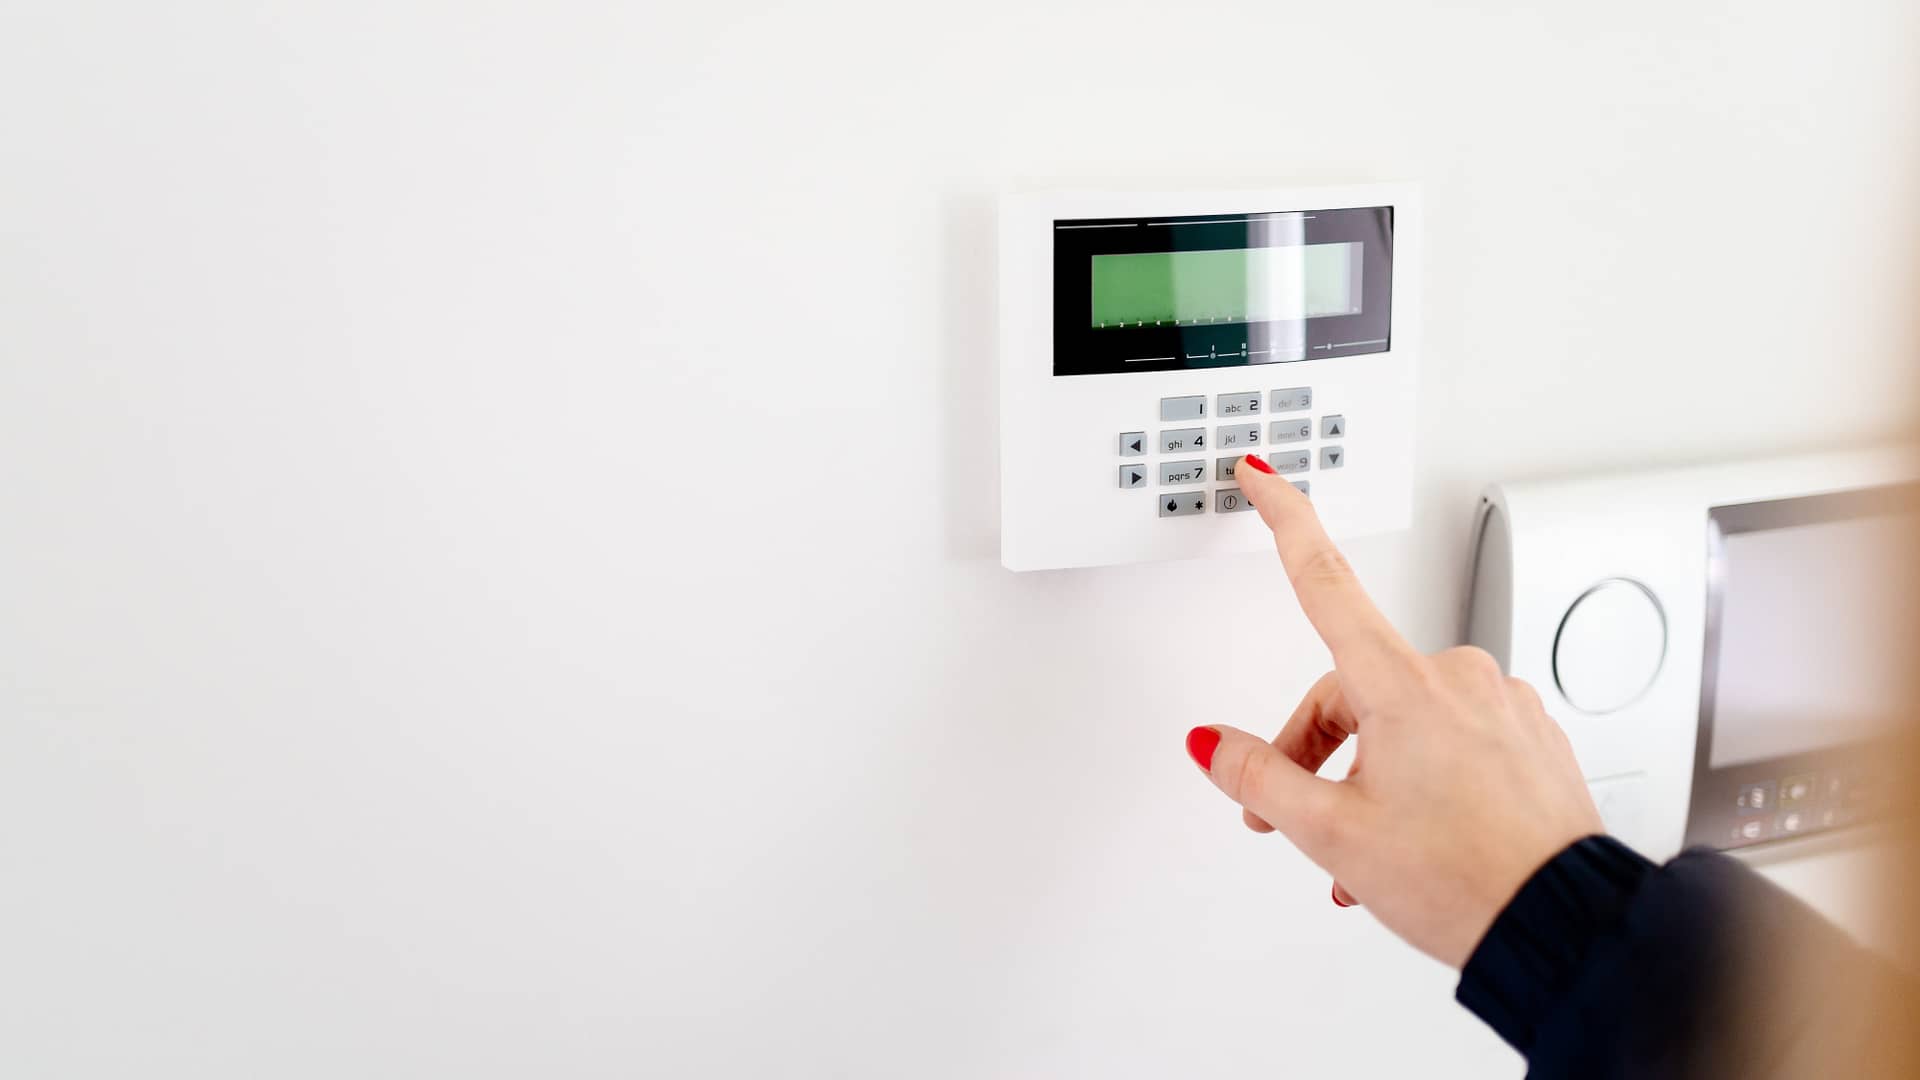 Persona desactivando alarma en panel de control de vivienda